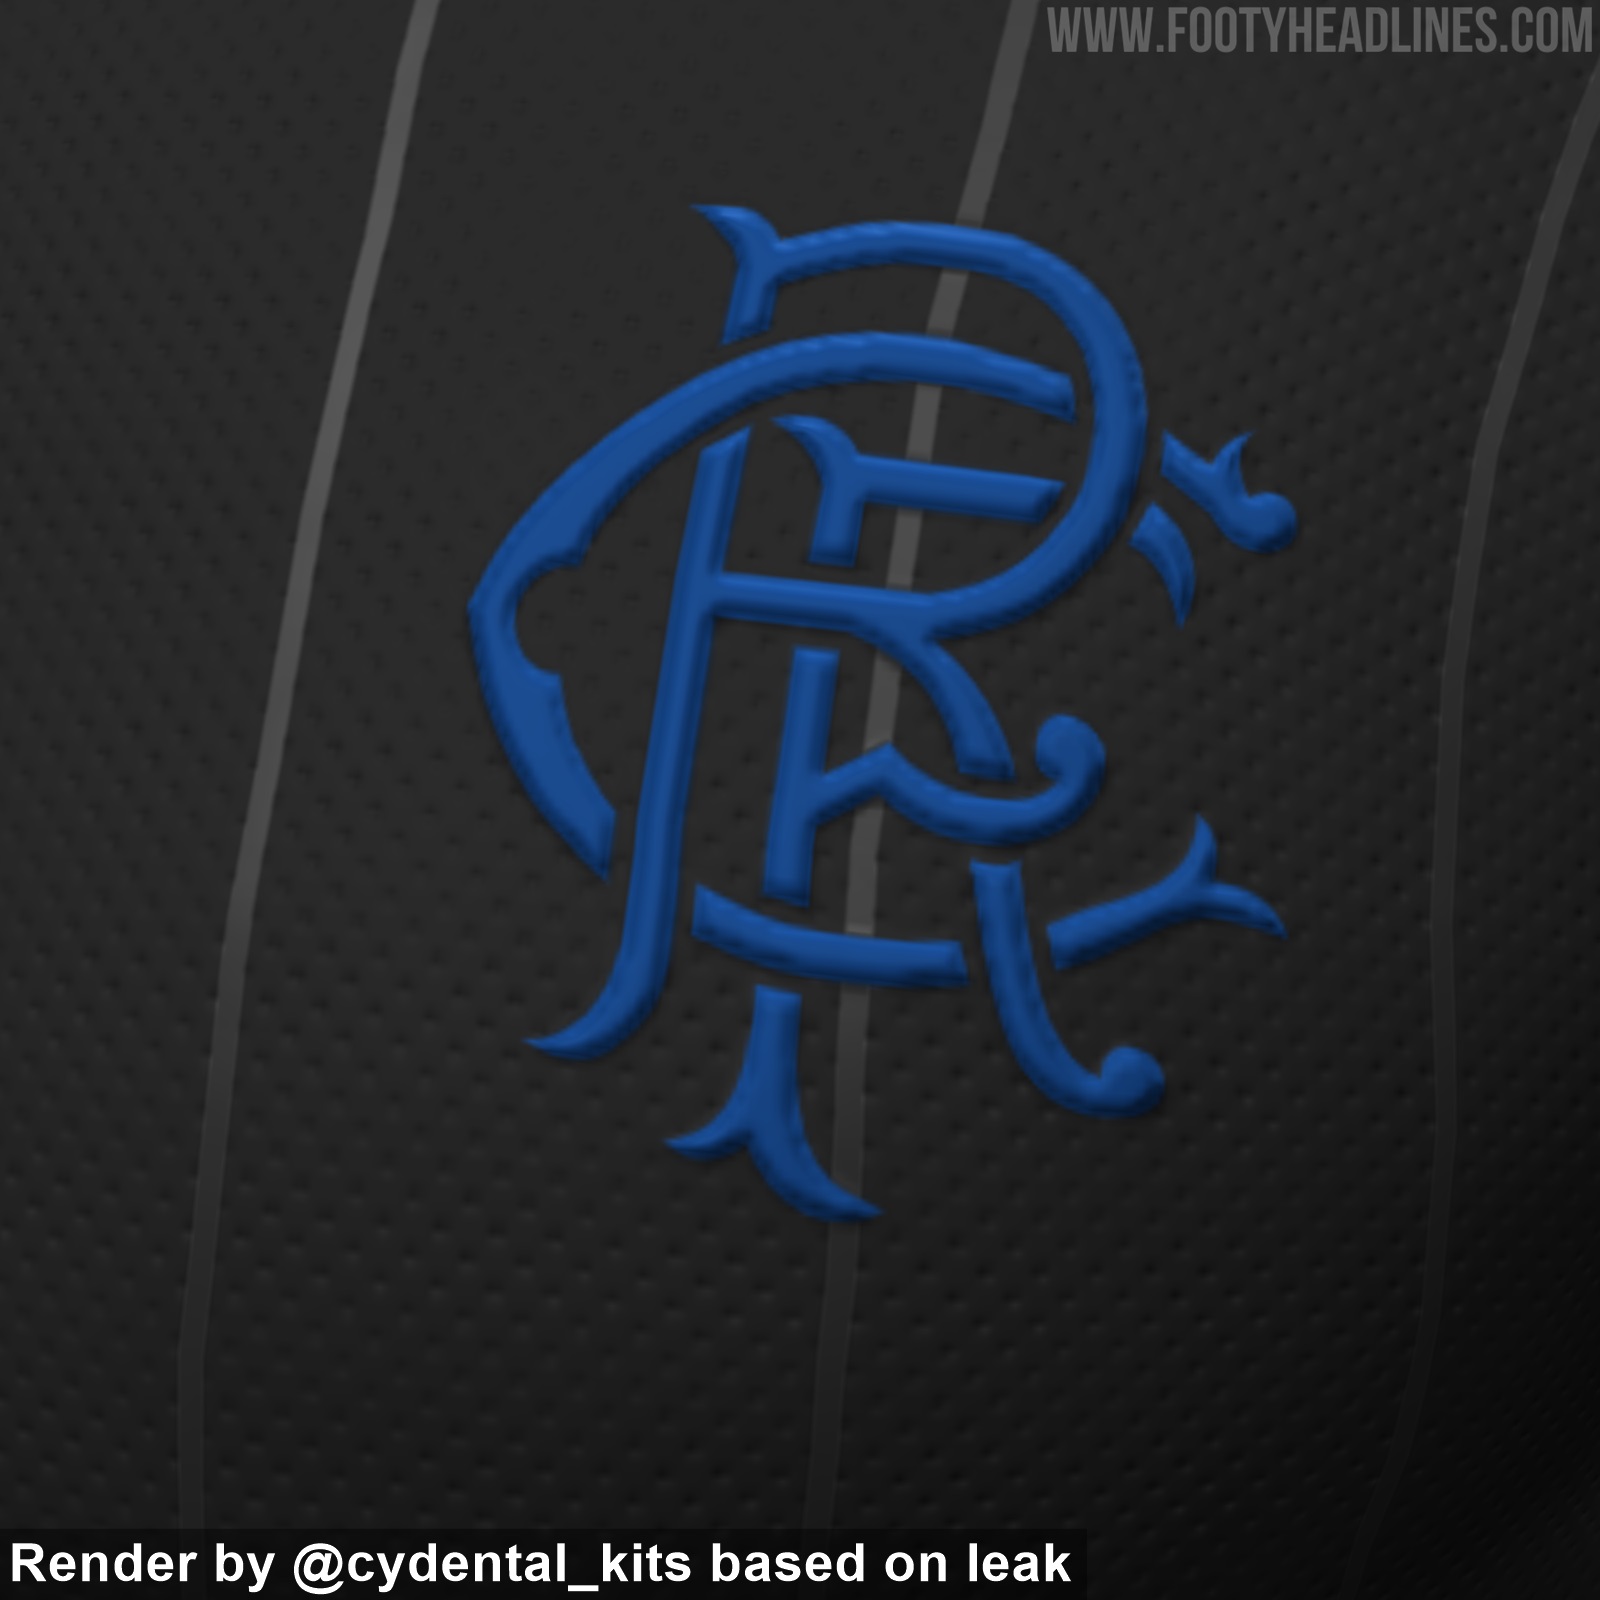 Rangers 22-23 Away Kit Released - Footy Headlines